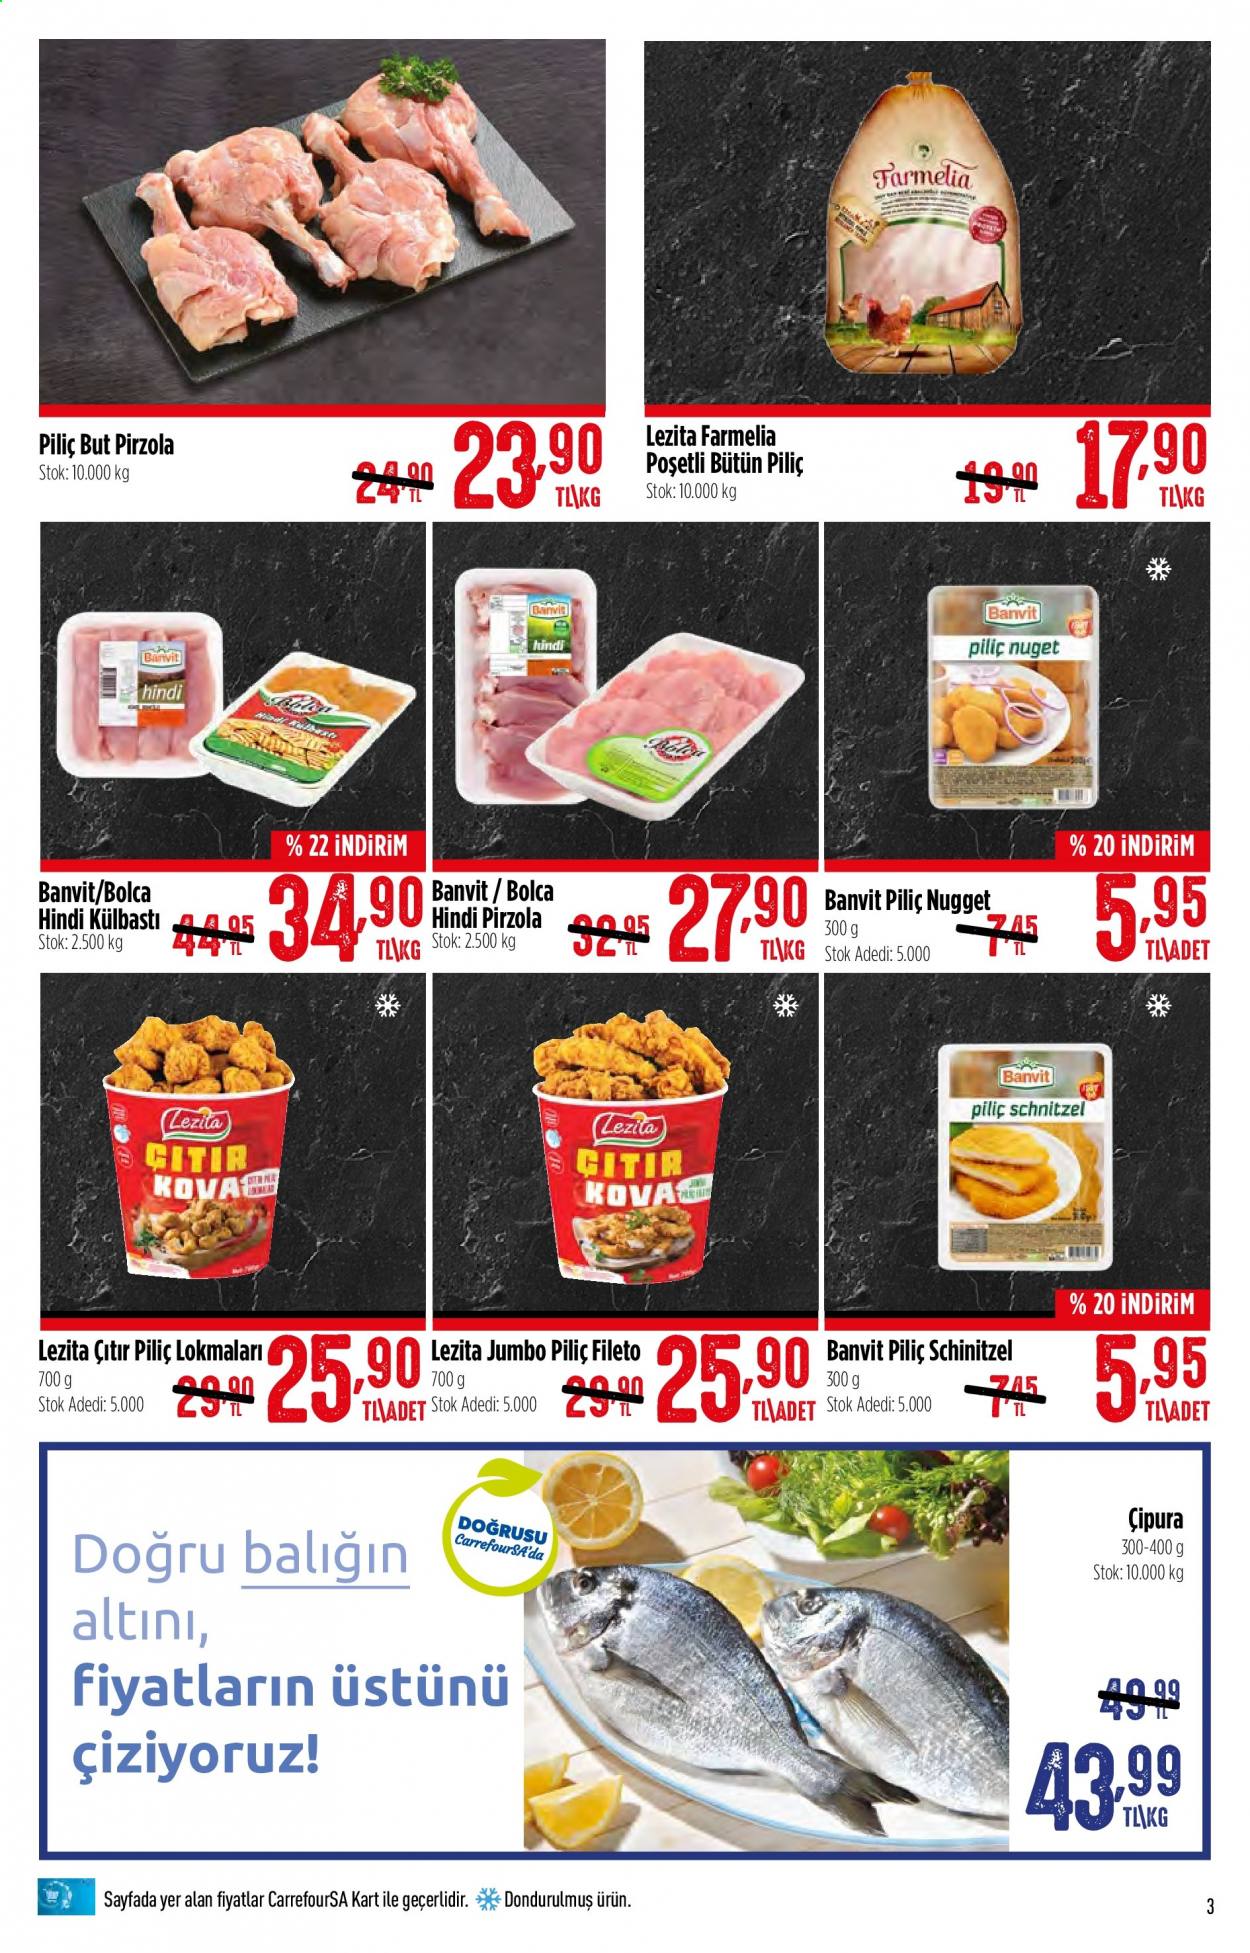 thumbnail - Carrefour aktüel ürünler, broşür  - 6.1.2021 - 6.13.2021 - Satıştaki ürünler - piliç fileto, hindi, bütün piliç, pirzola, çipura, balık, schnitzel. Sayfa 3.